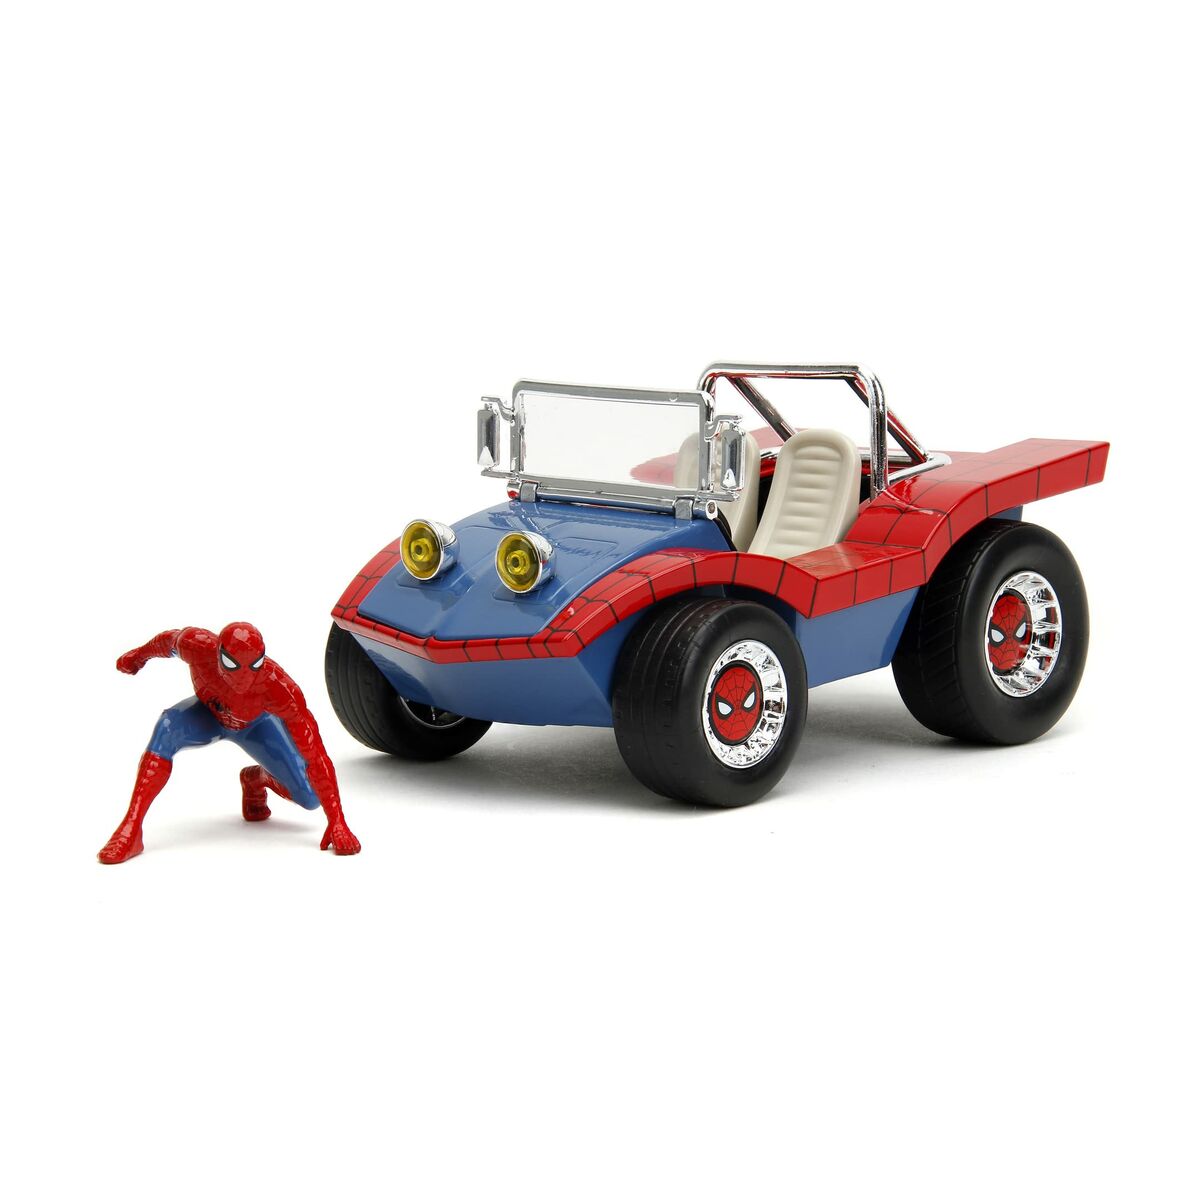 Bil Spider-Man Buggy-Leksaker och spel, Fordon-Spider-Man-peaceofhome.se